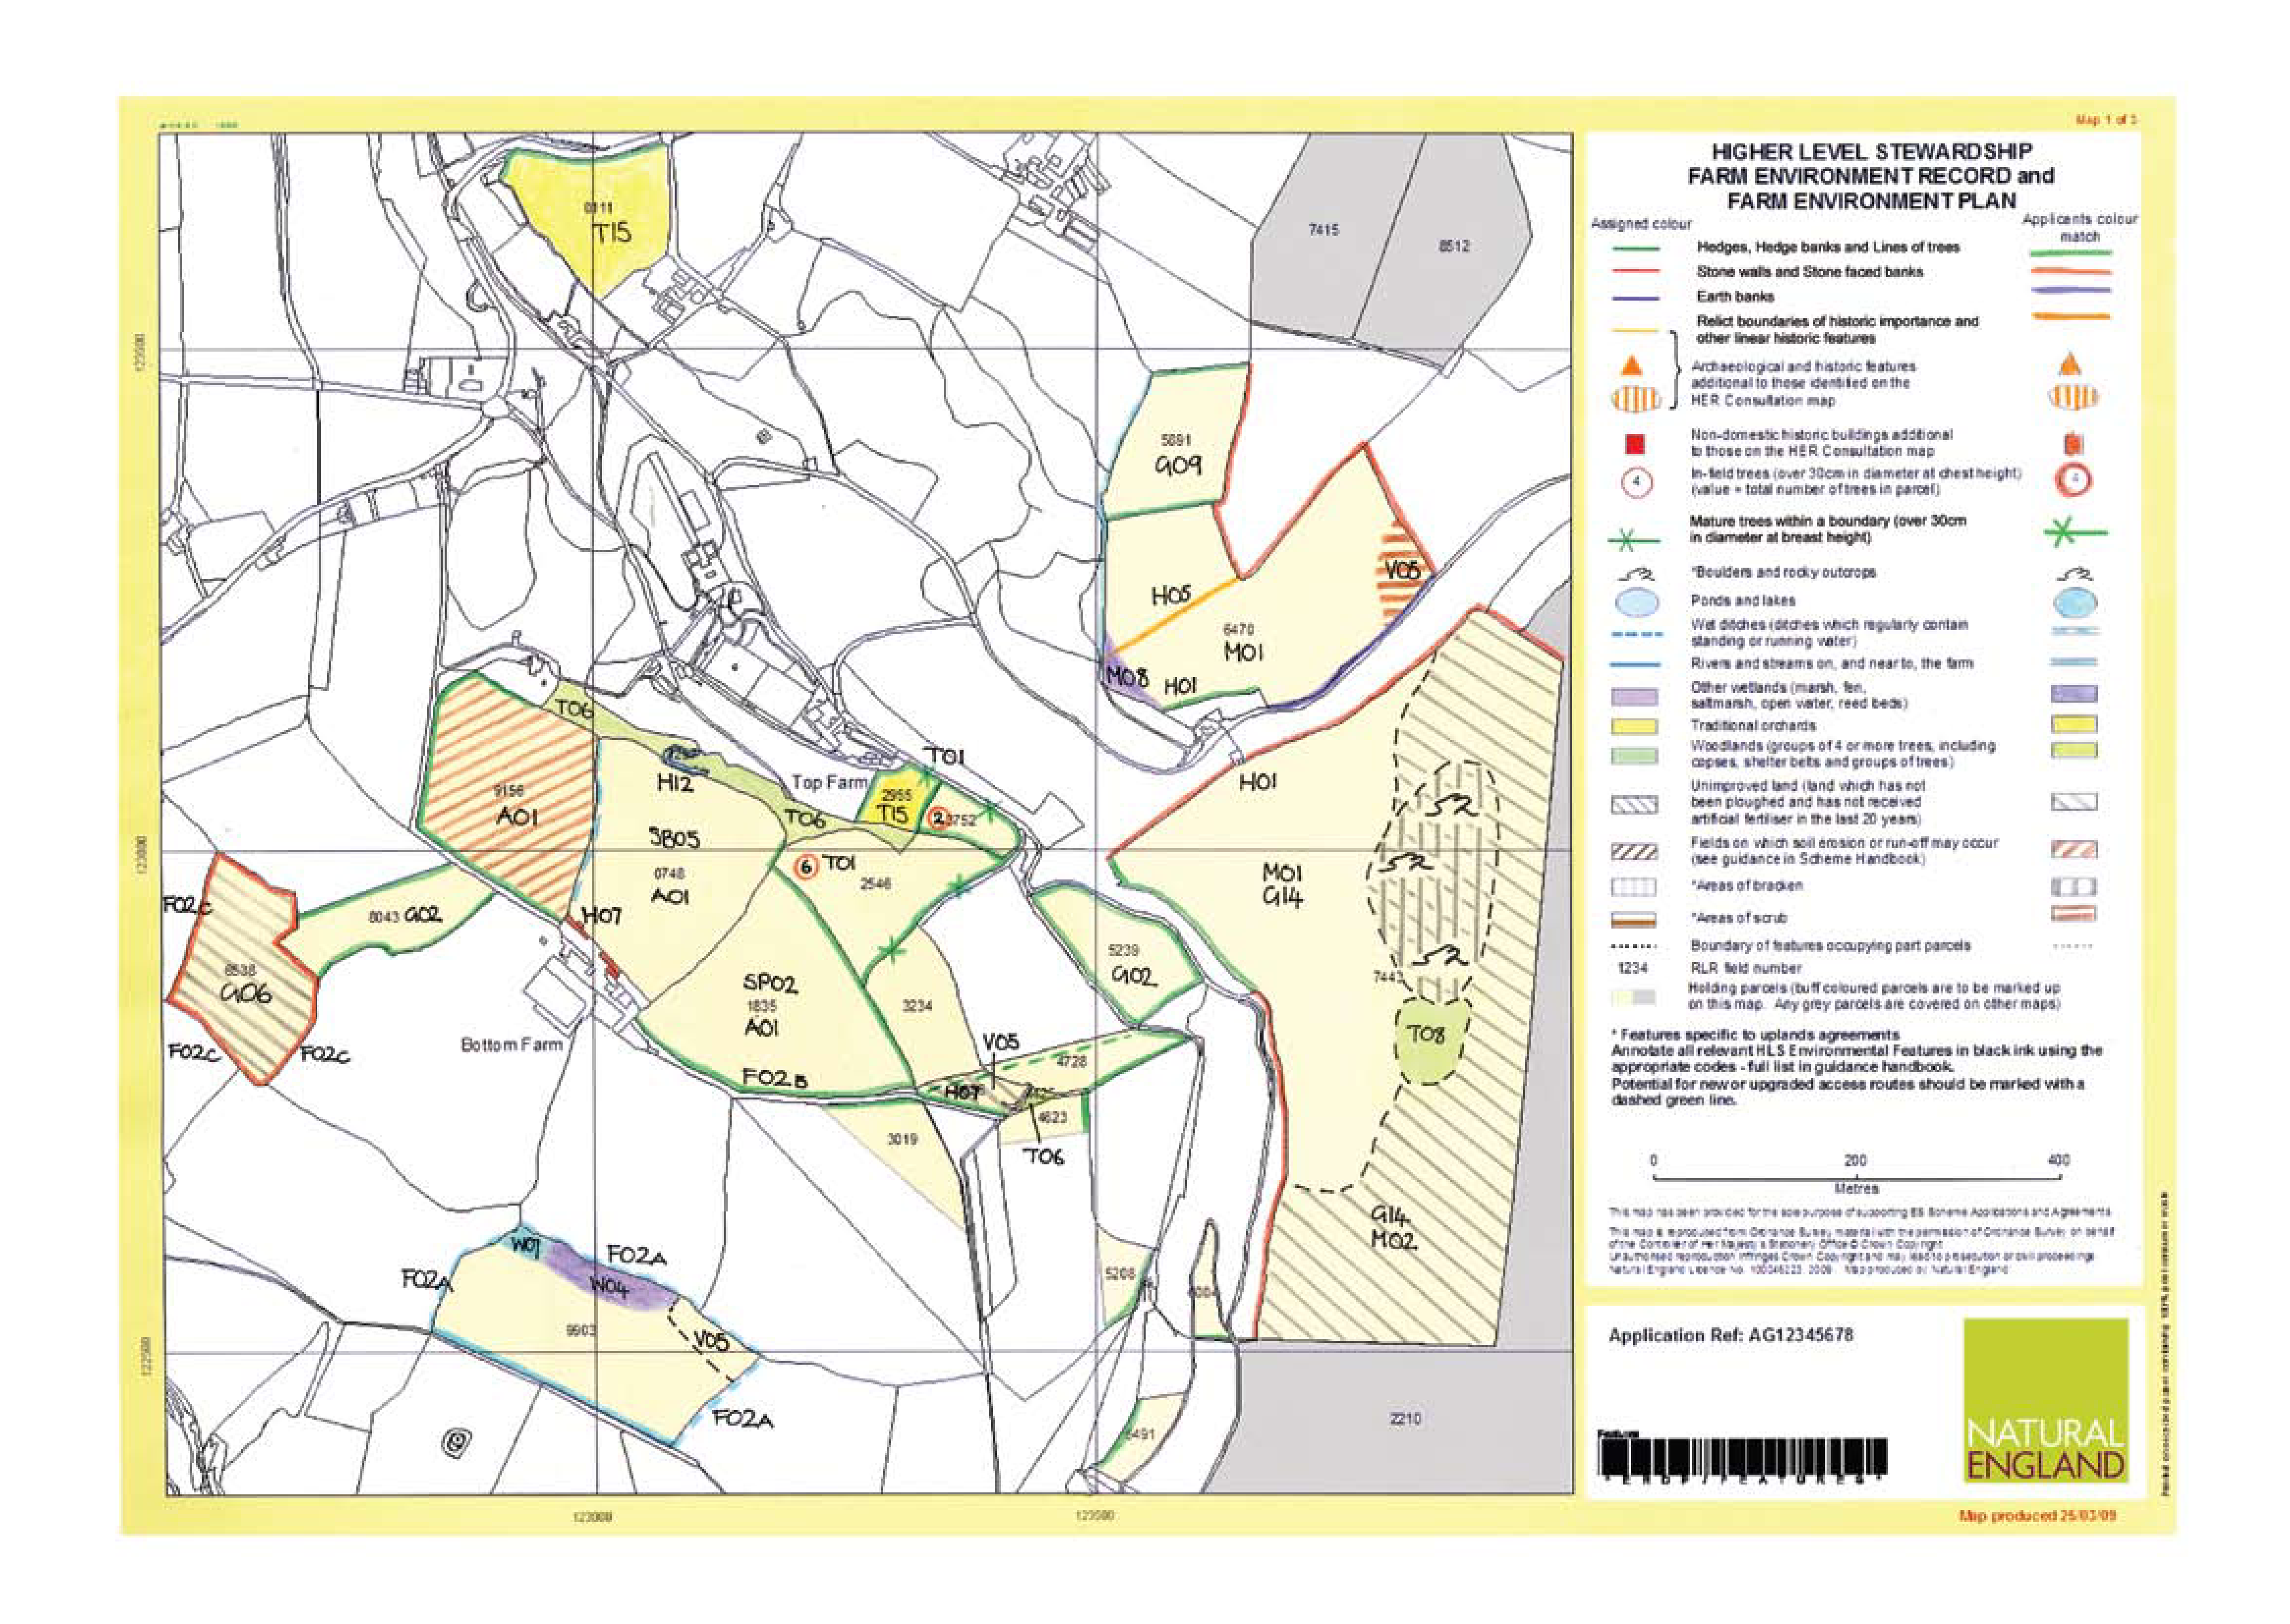 Mapa k faremnímu plánu v rámci anglické vyšší úrovně agro-envi. Obsahuje prvky plošné (zemědělské pozemky), liniové (živé ploty, příkopy aj.) i bodové (solitérní stromy). Ručně vepsané kódy označují zvolené managementové tituly.